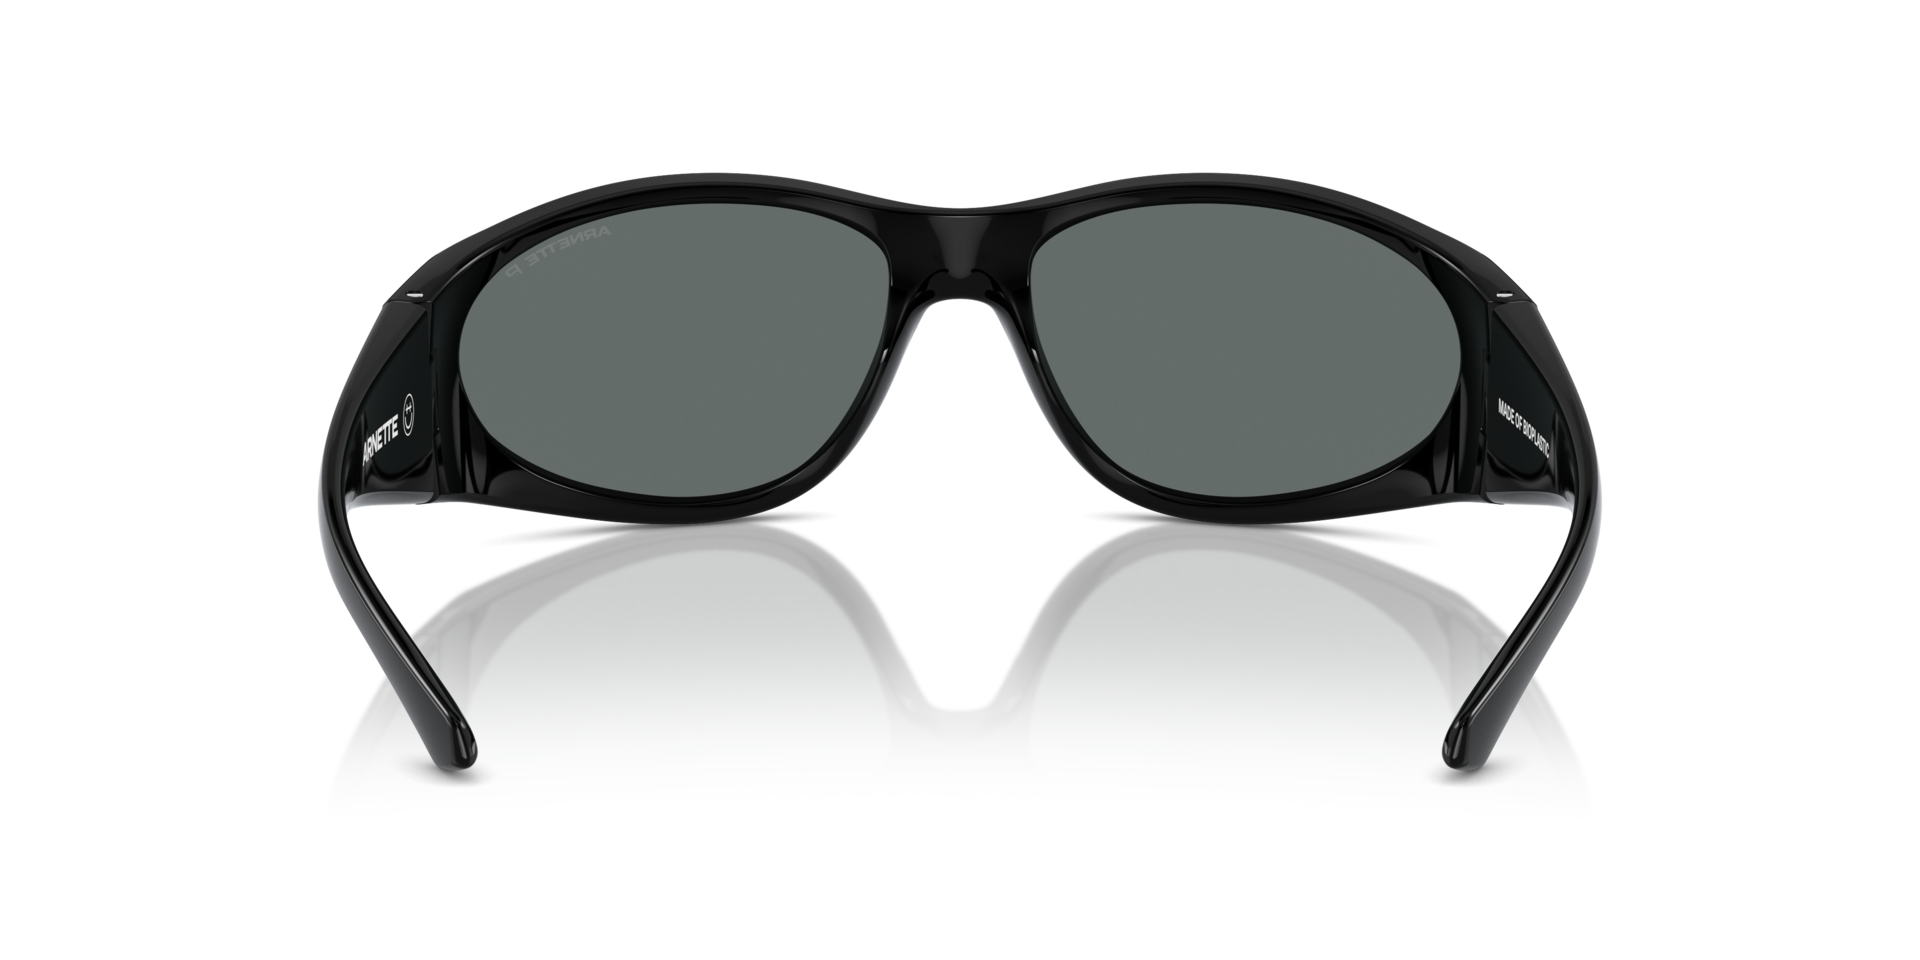 Das Bild zeigt die Sonnenbrille AN4342 294681 von der Marke Arnette in schwarz.